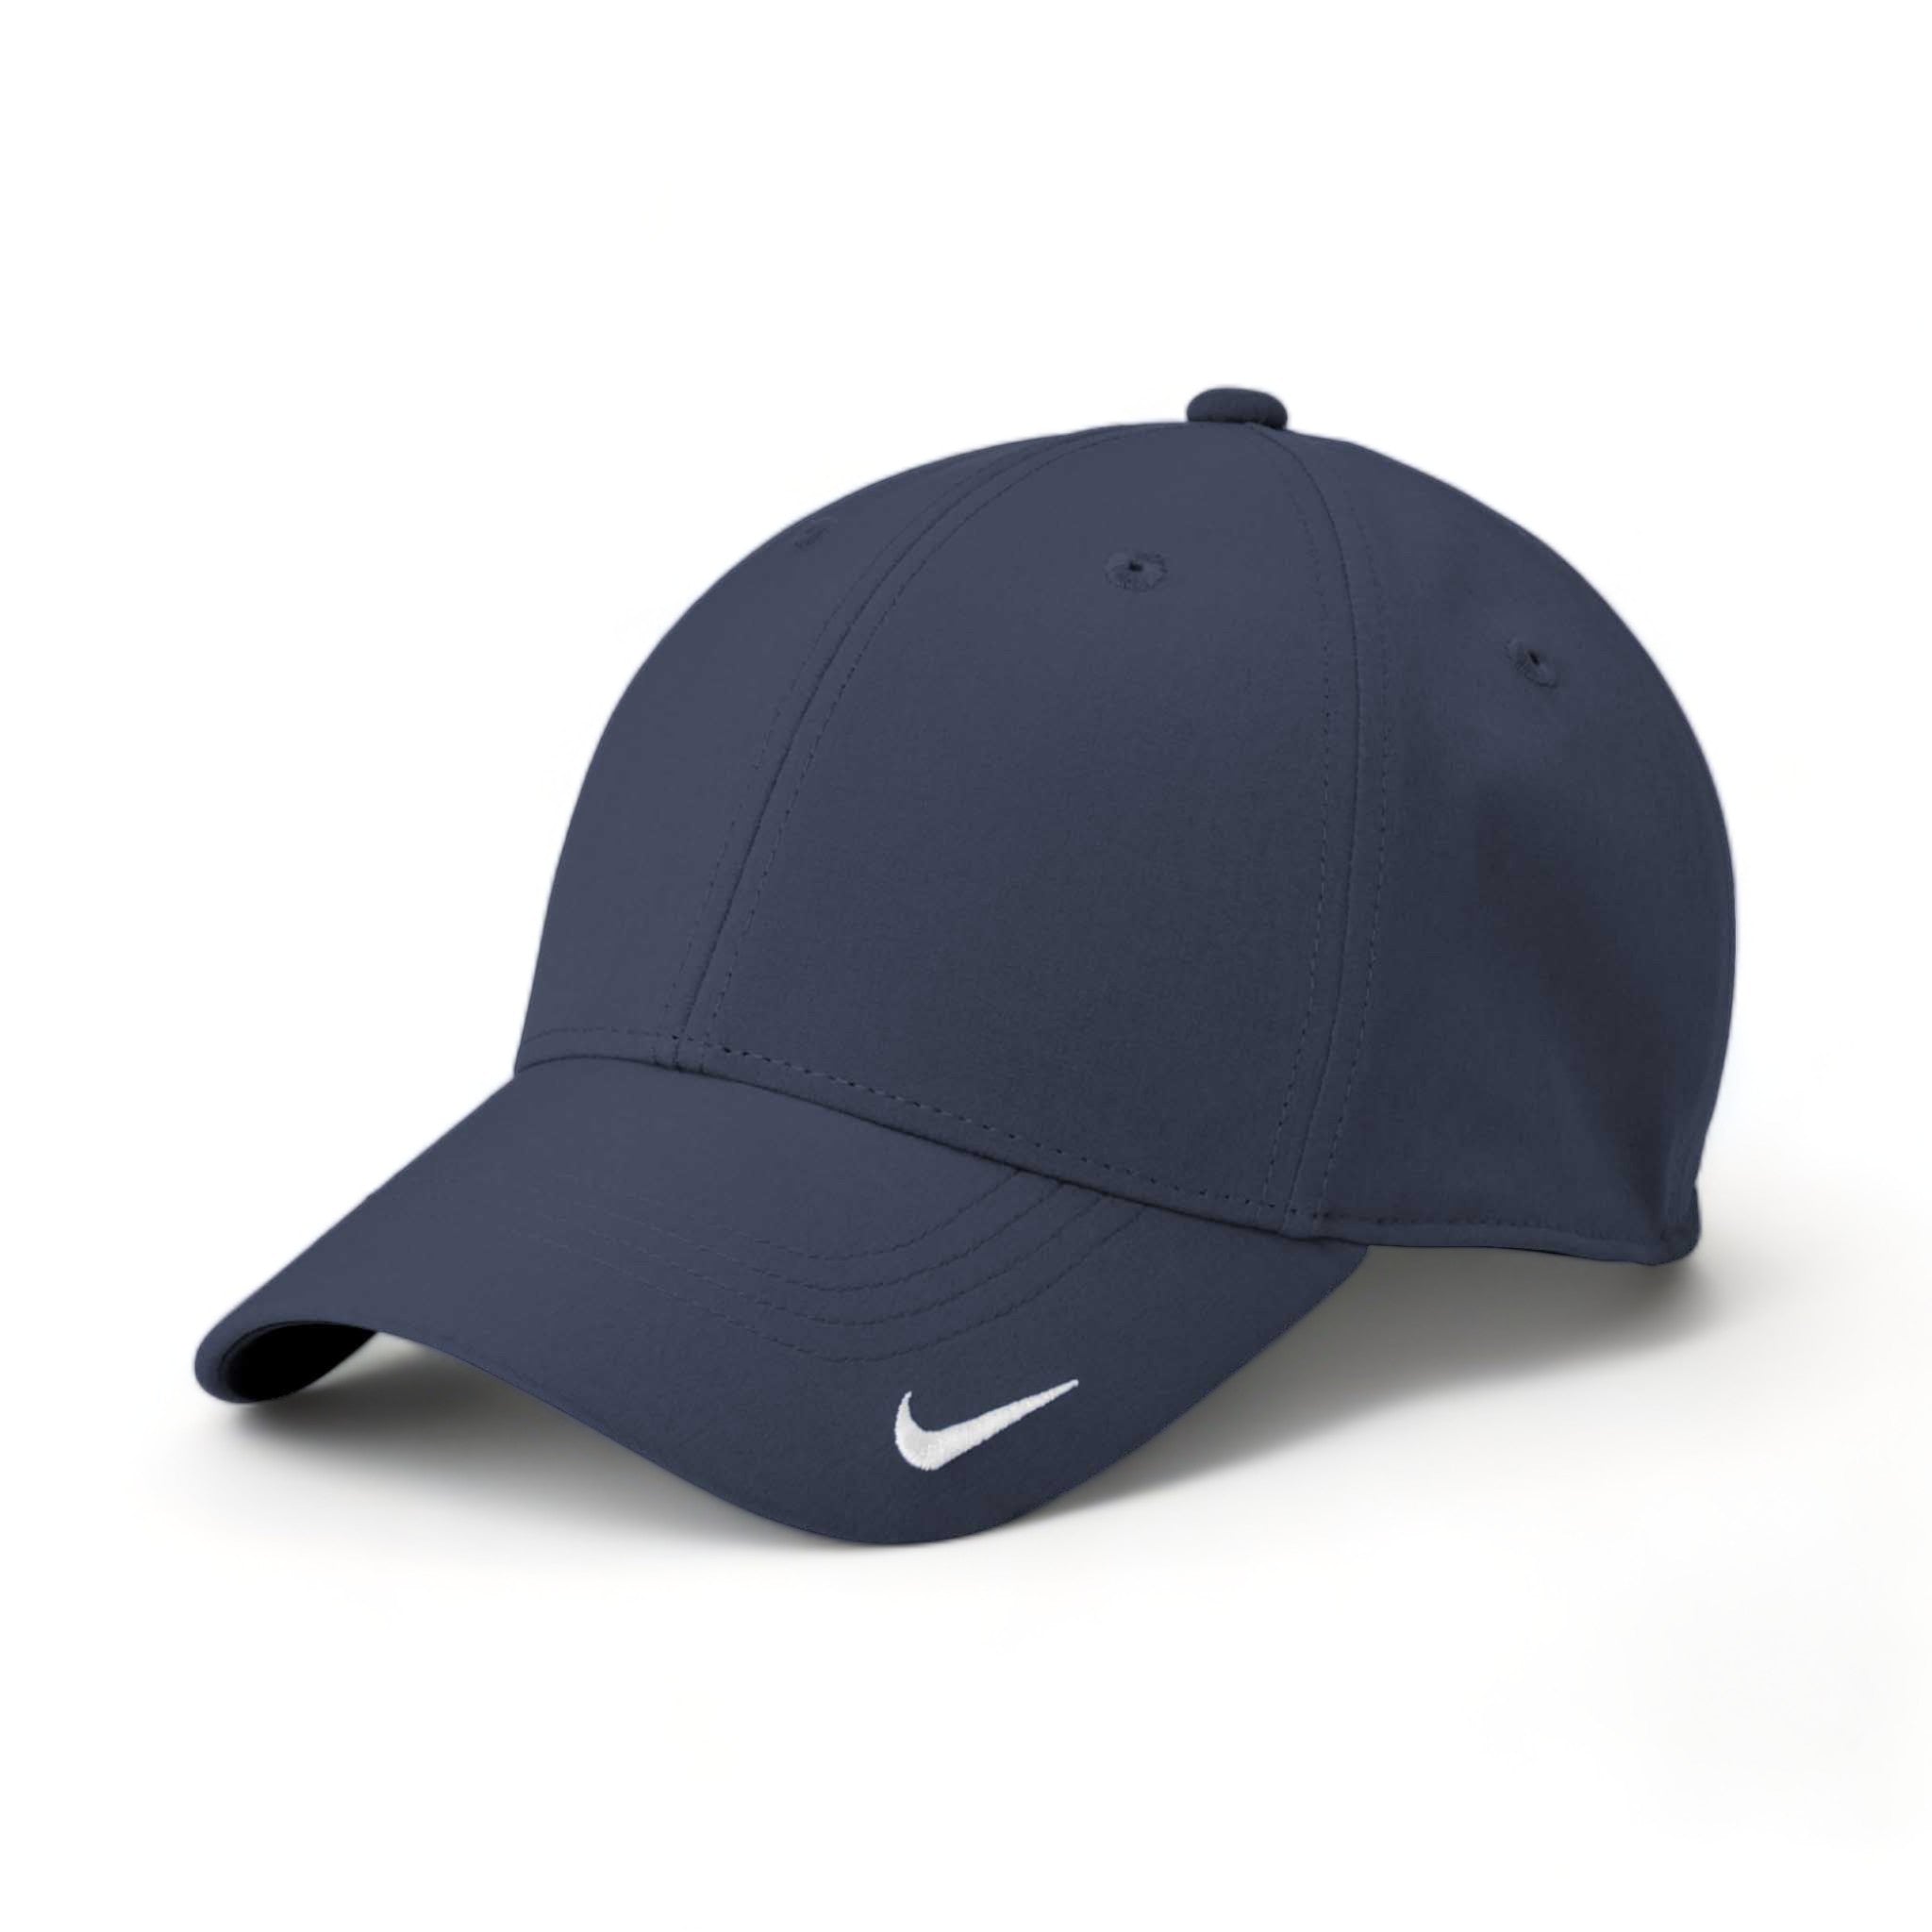 Side view of Nike NKFB6447 custom hat in navy